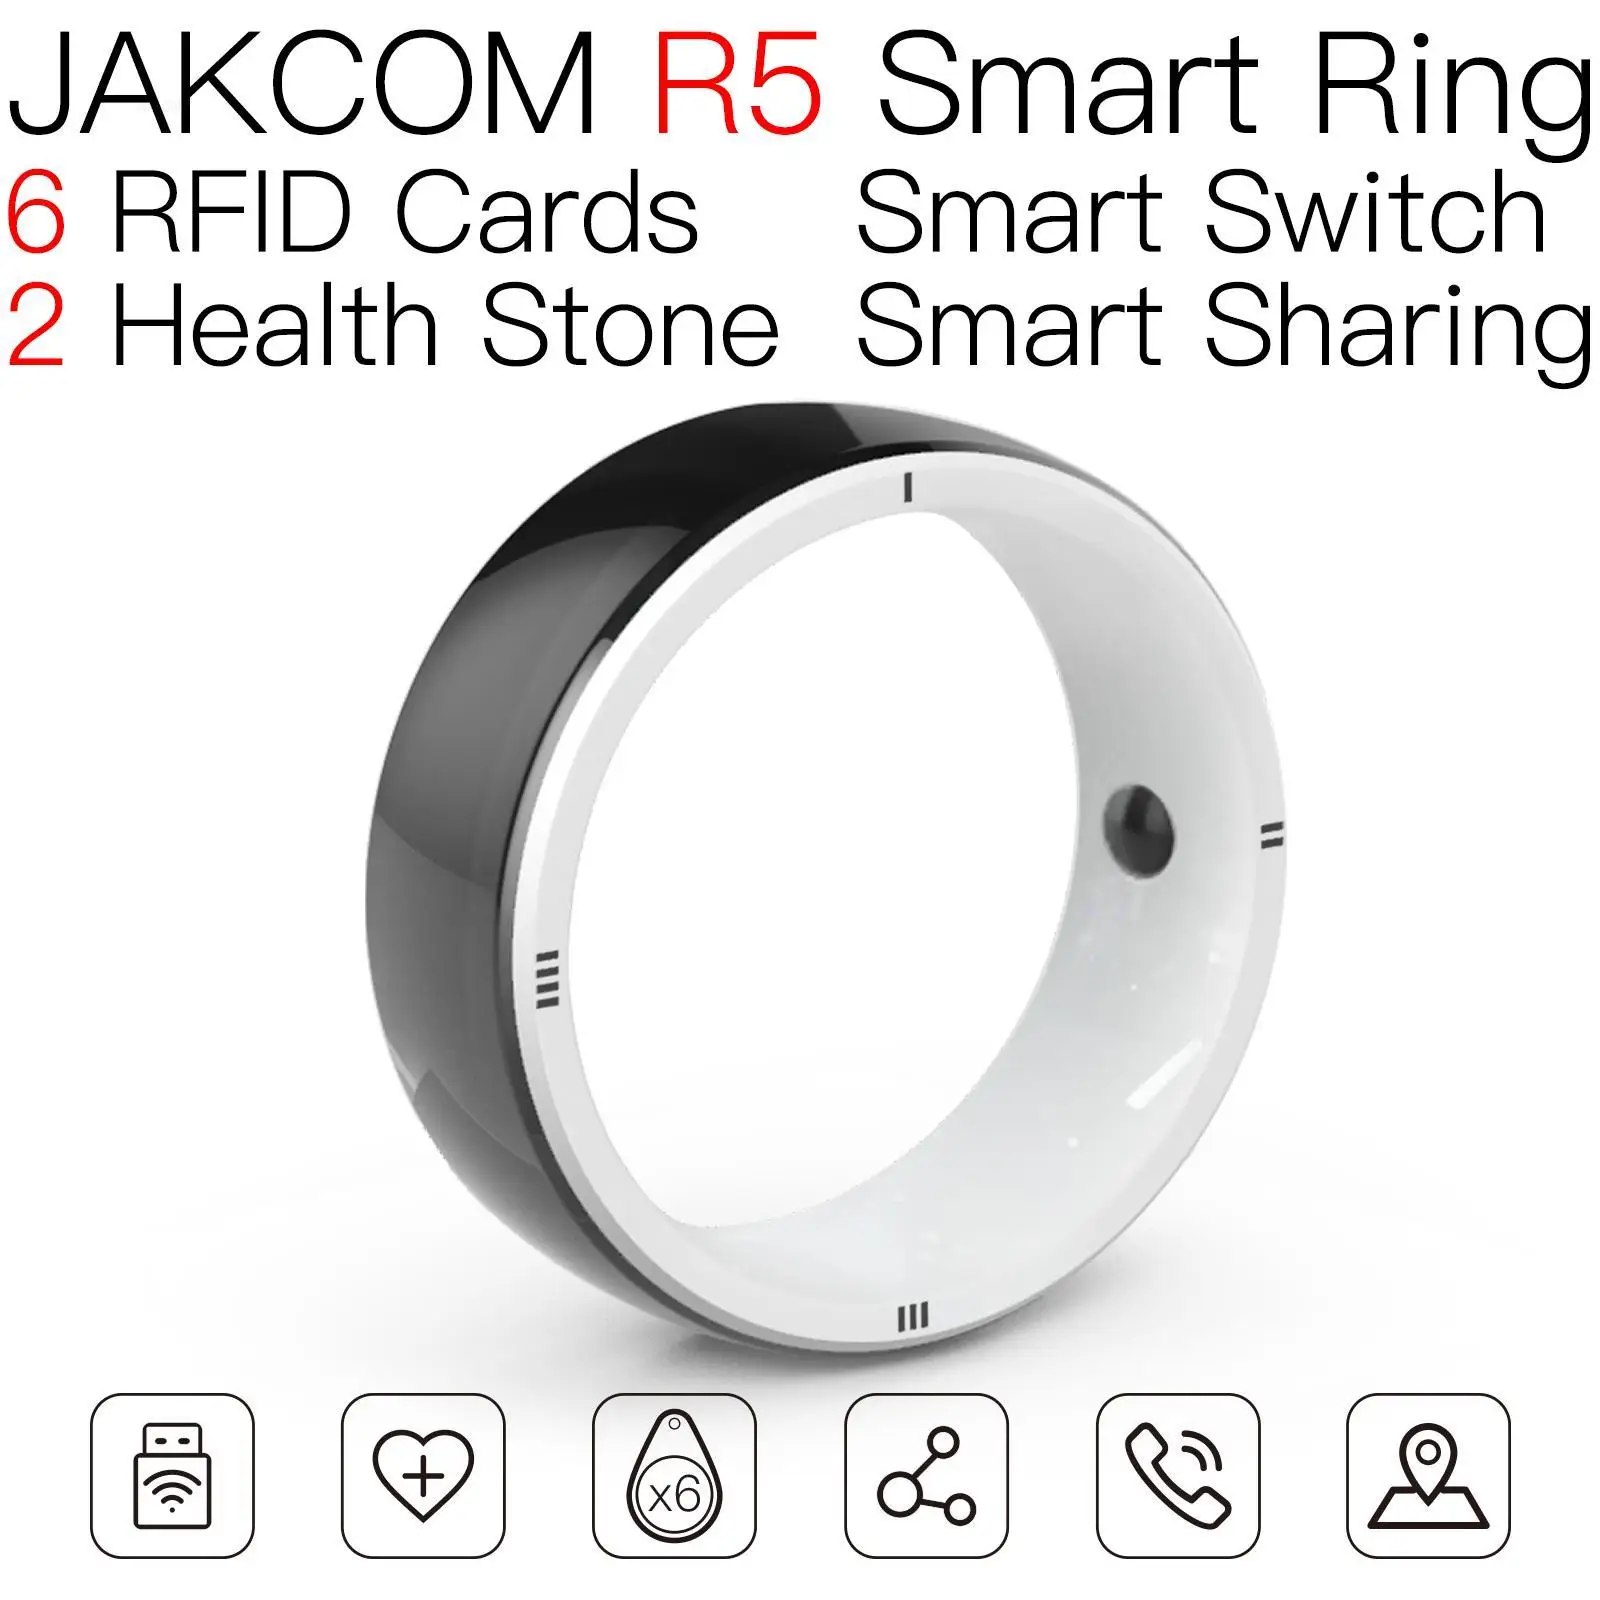 

Смарт-кольцо JAKCOM R5, лучше, чем rockwell, программное обеспечение, сетка flix, 1 год, rfid, двойная зеркальная маркировочная машина, несколько ярлыков ...